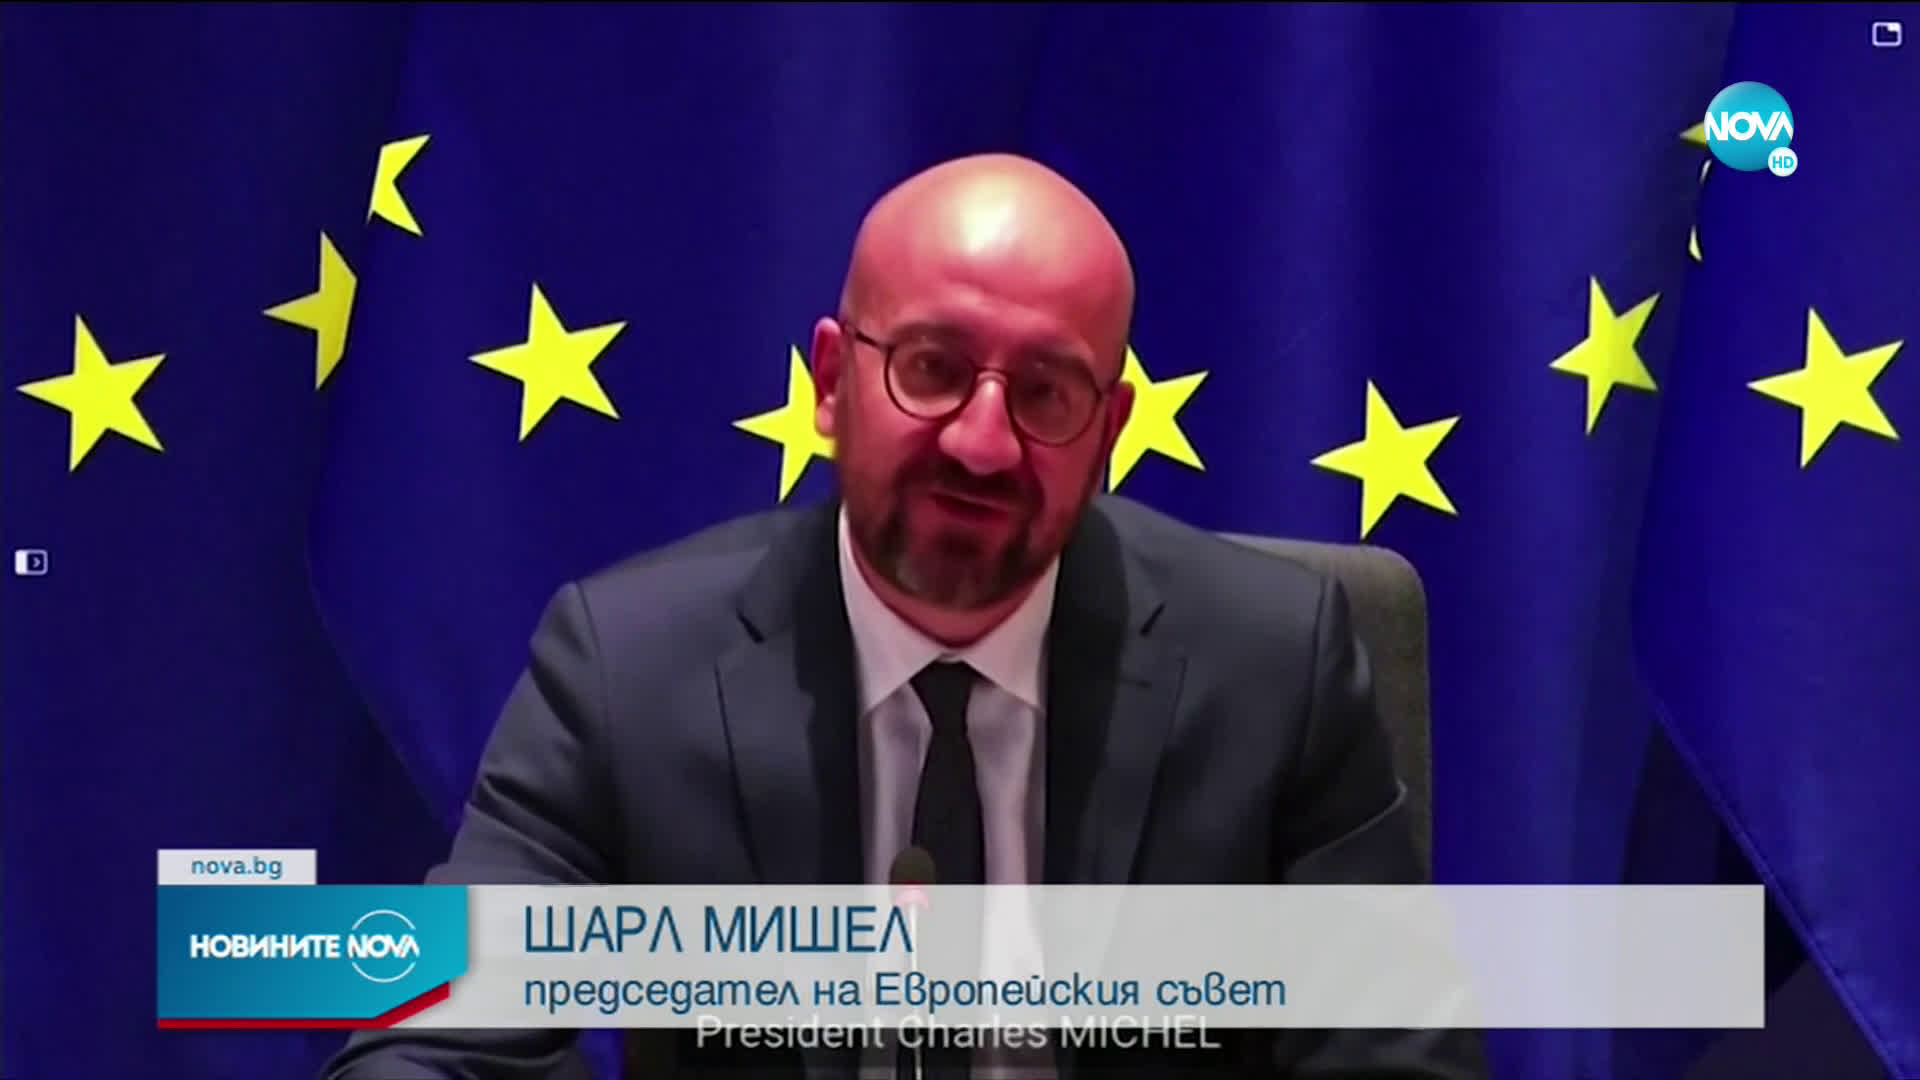 ЕС договори край на политическата криза в Грузия